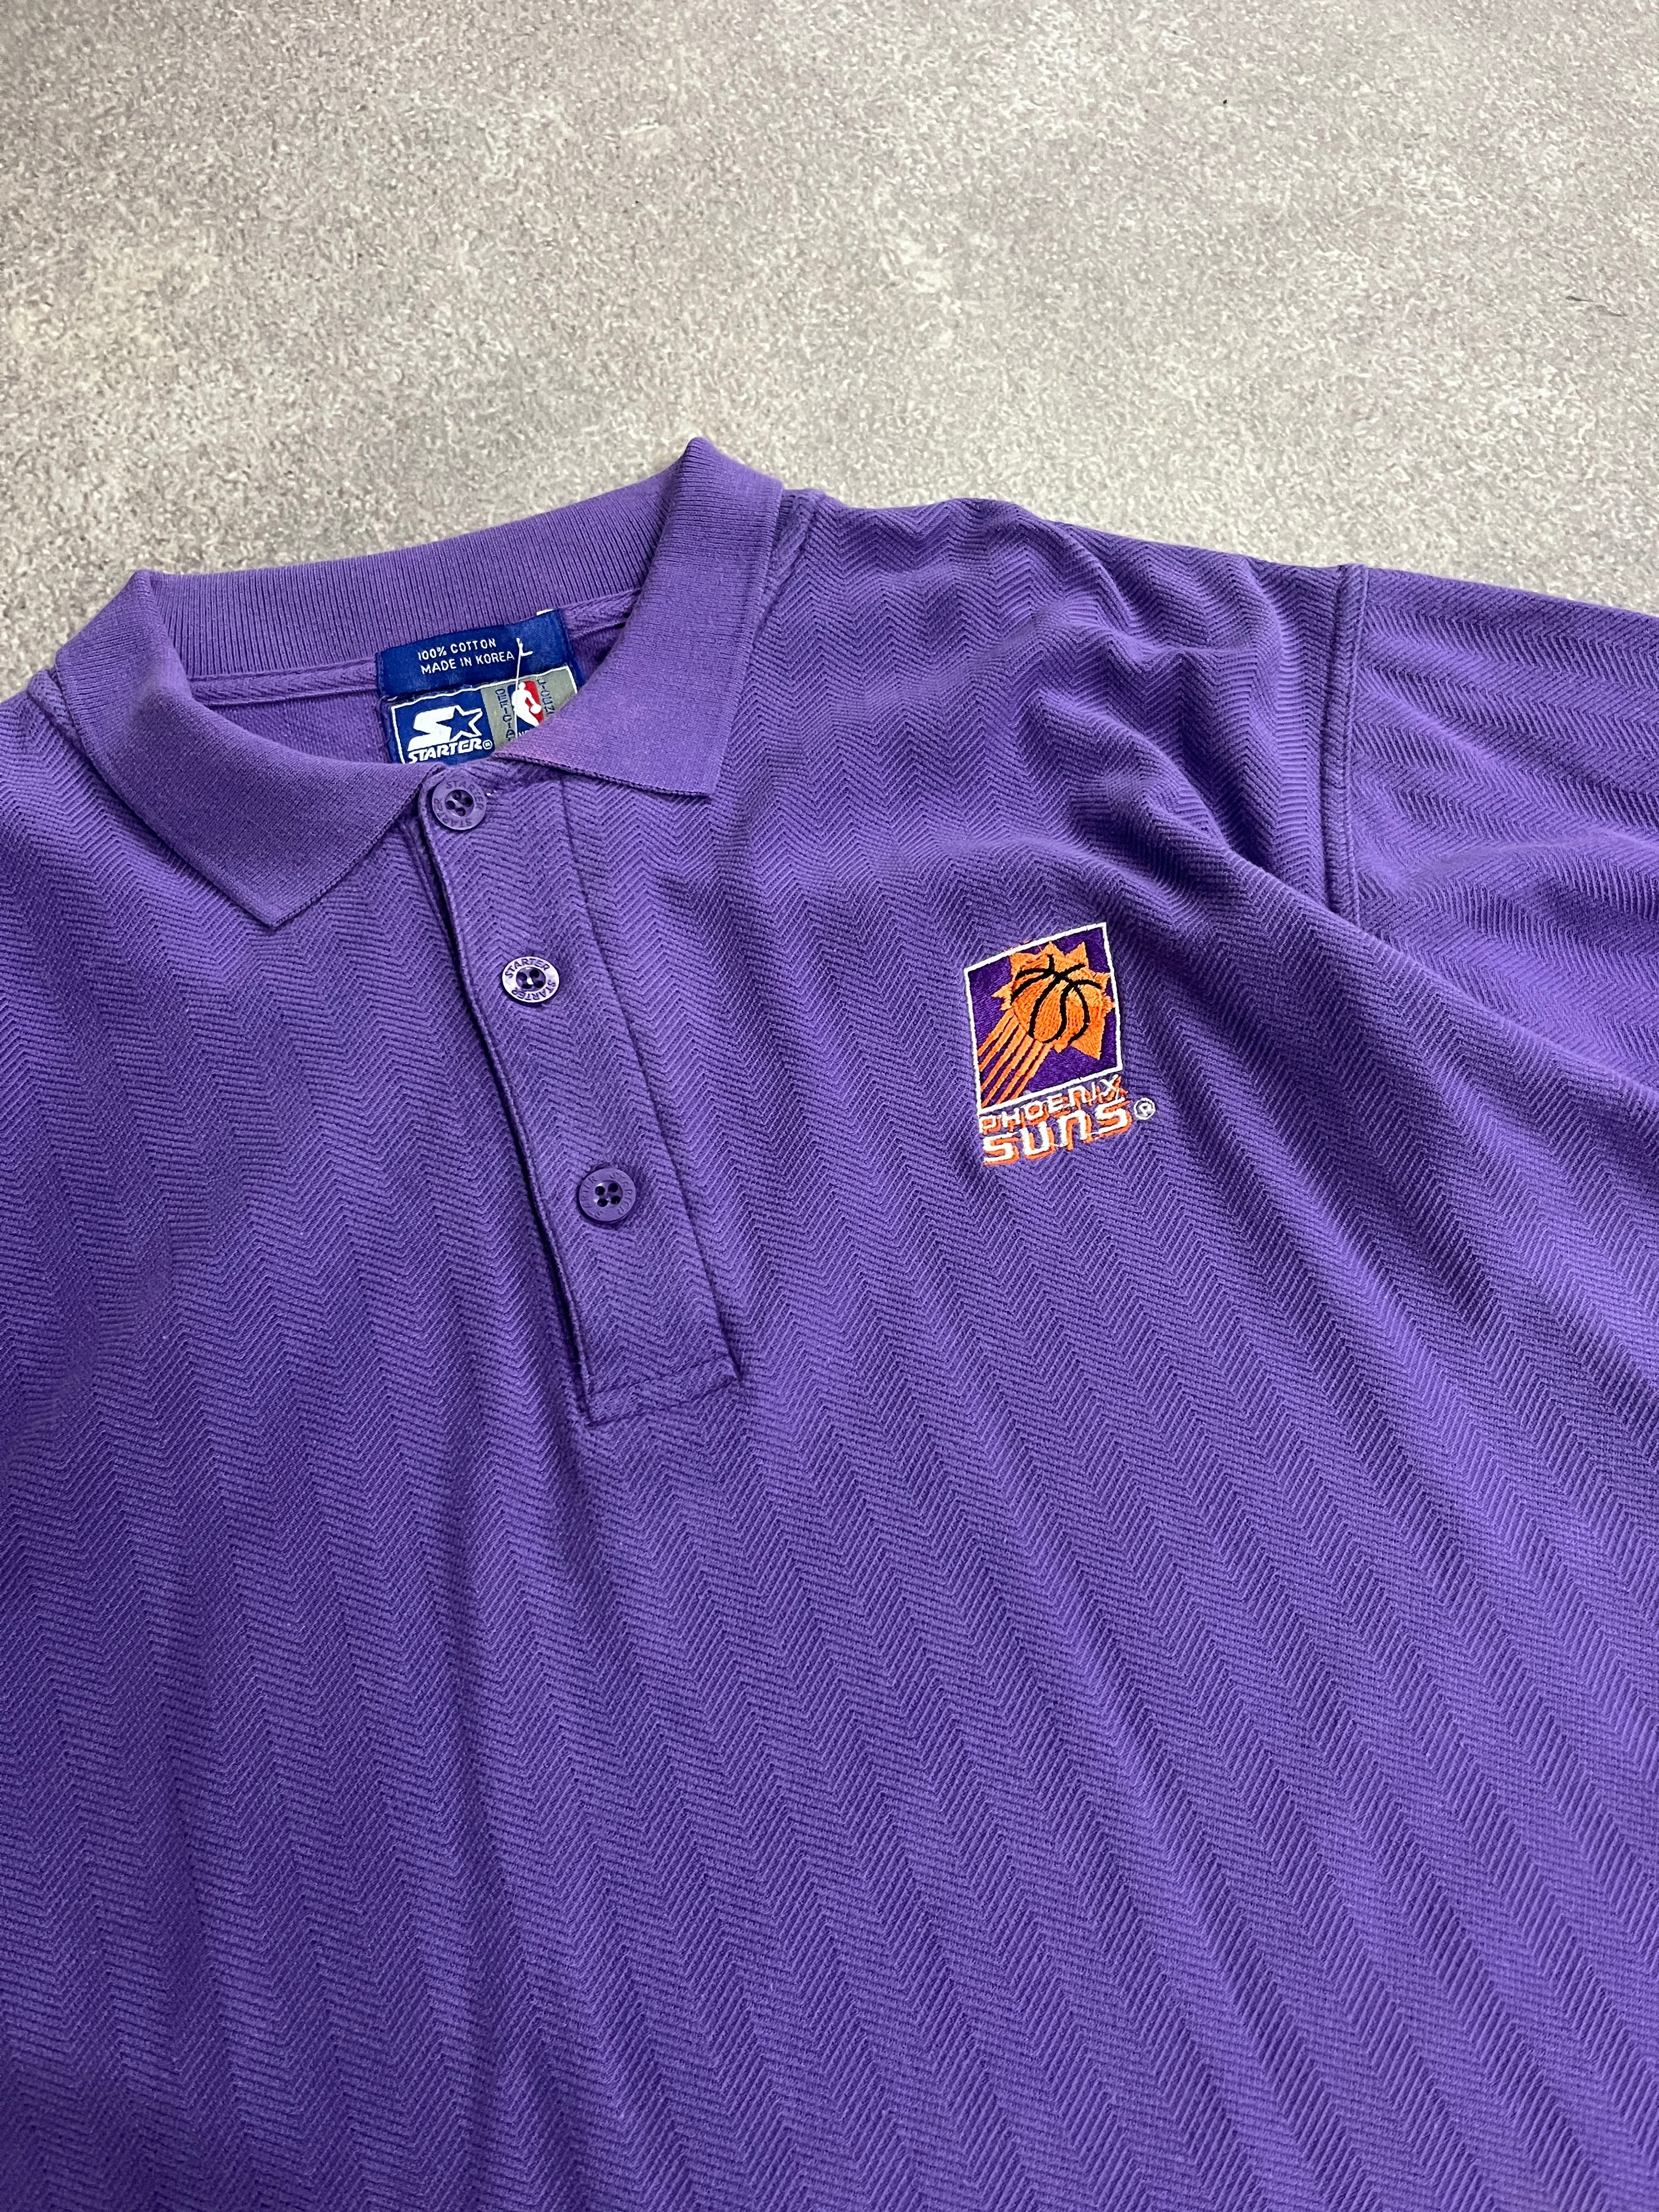 Vintage Phoenix Sun Jersey TShirt Purple // Medium - RHAGHOUSE VINTAGE